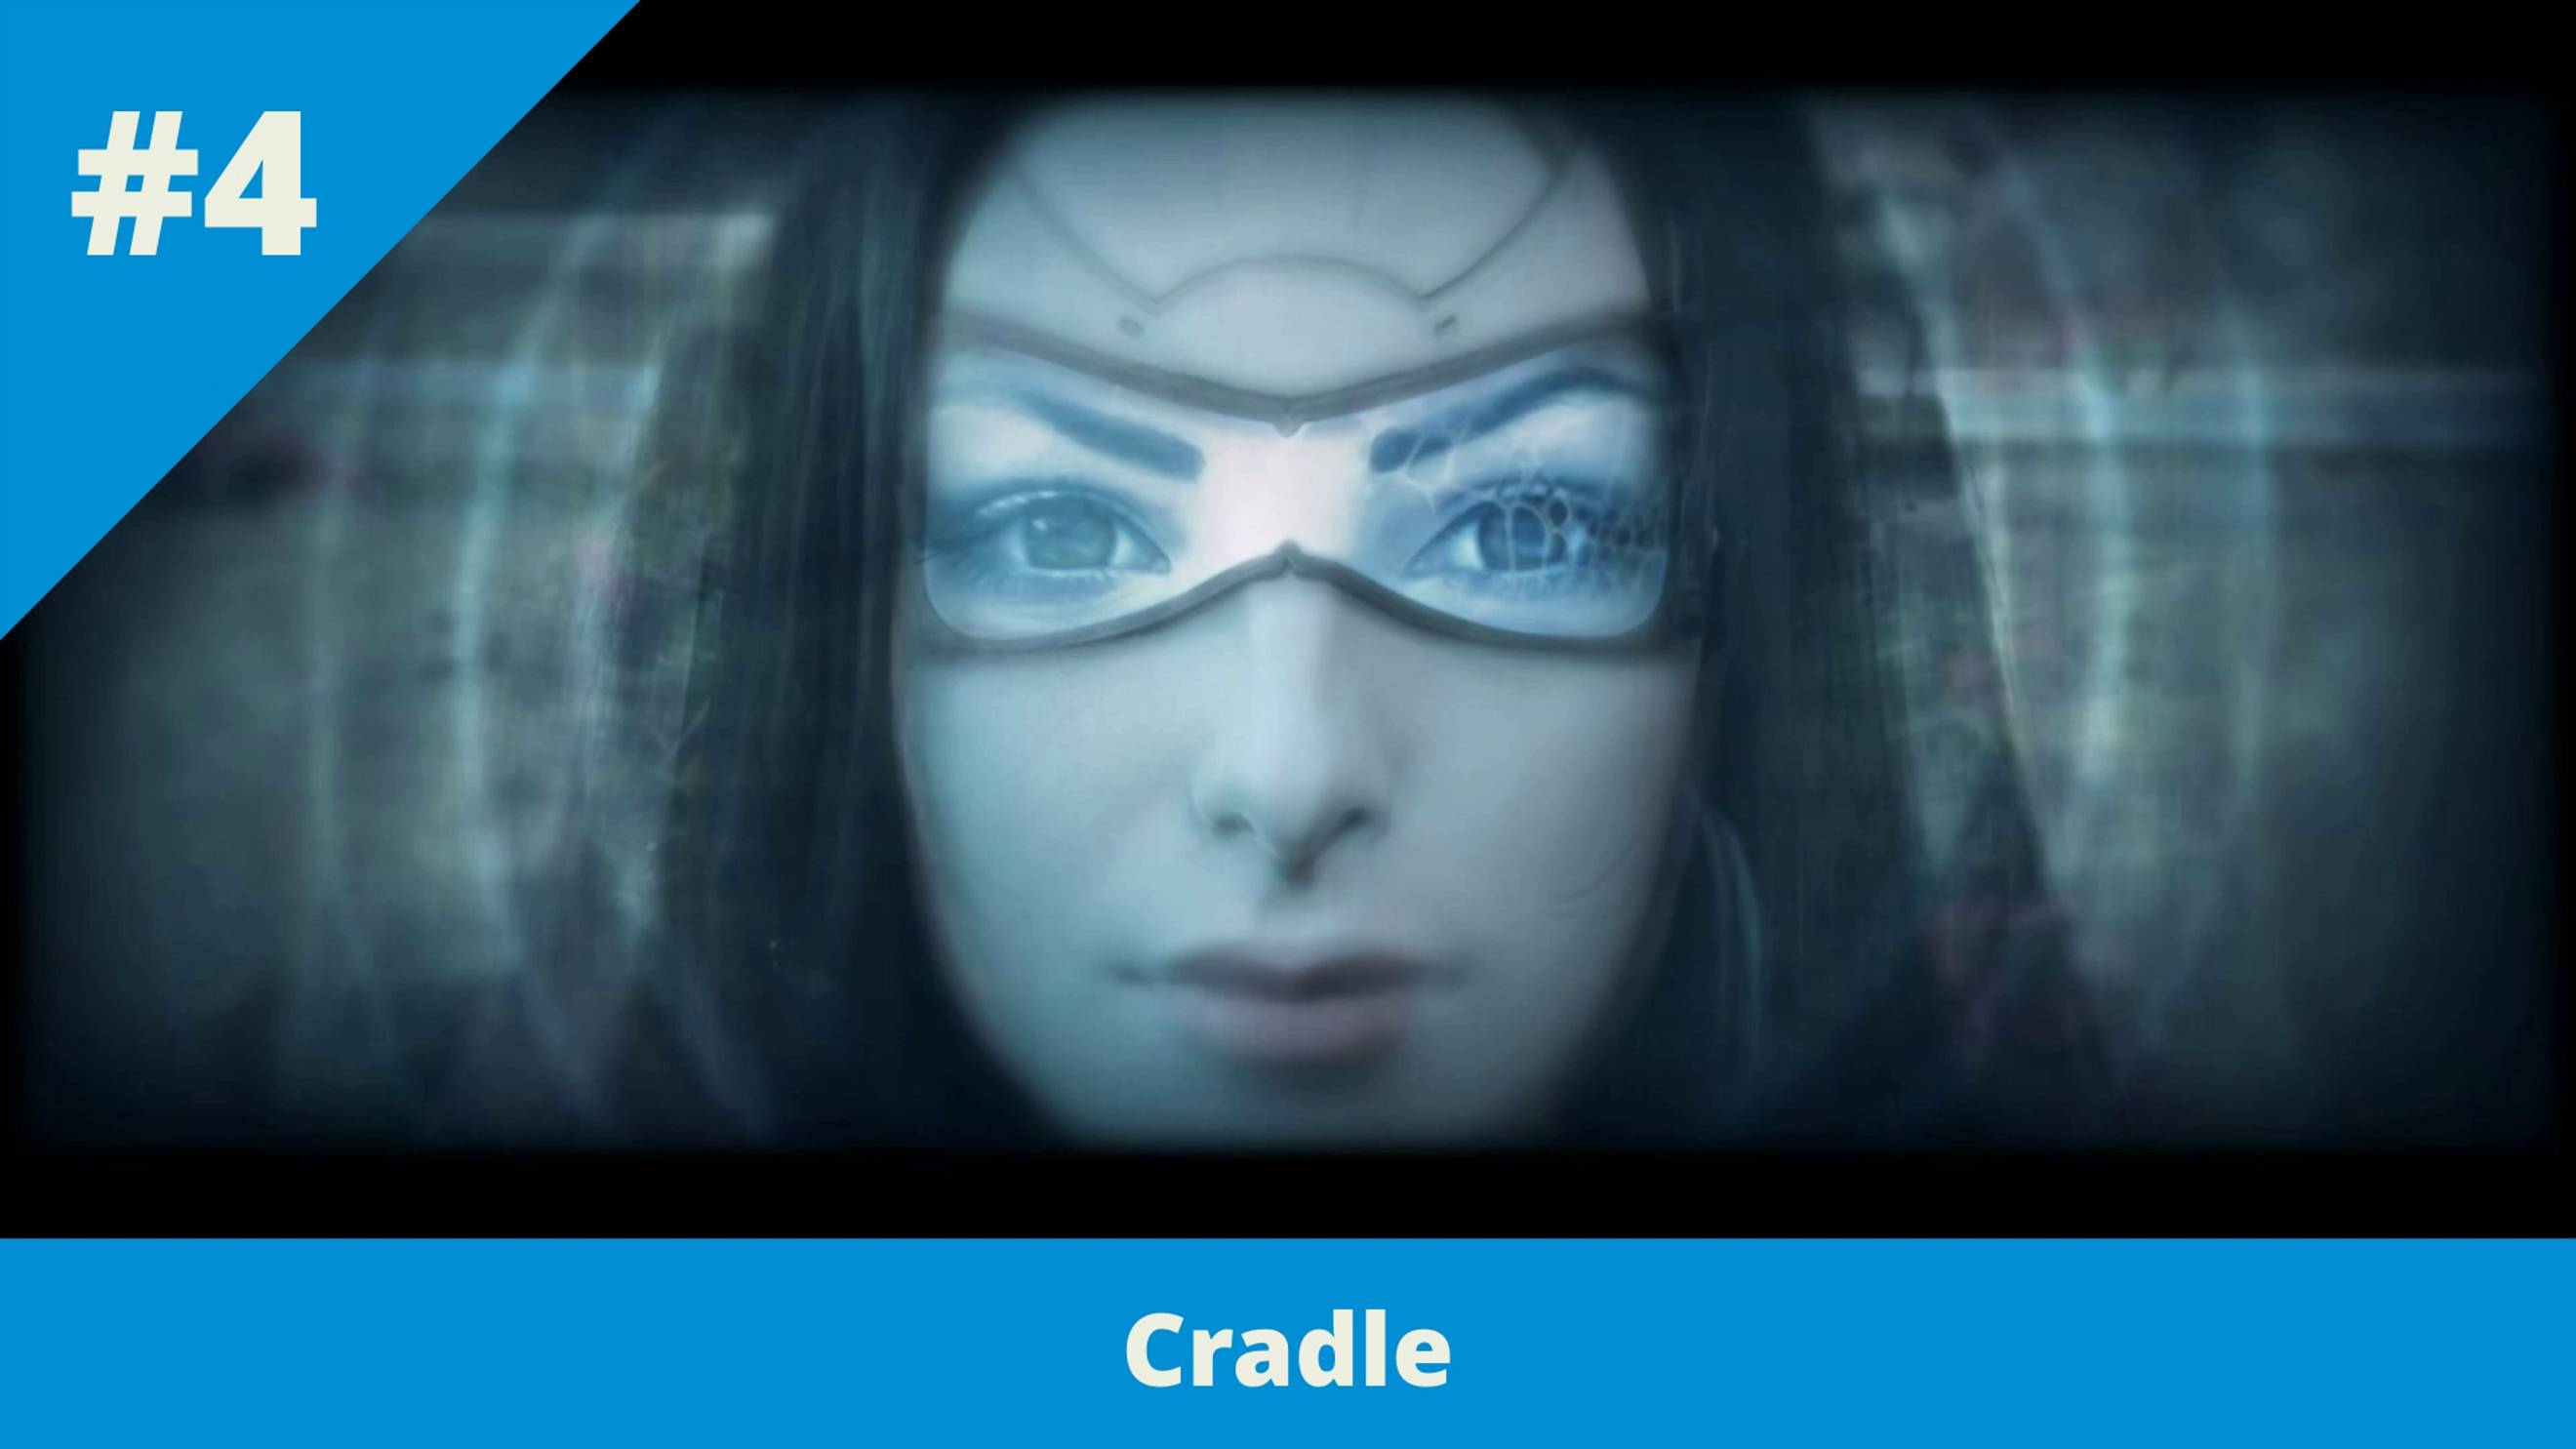 Cradle - 4 - Финал